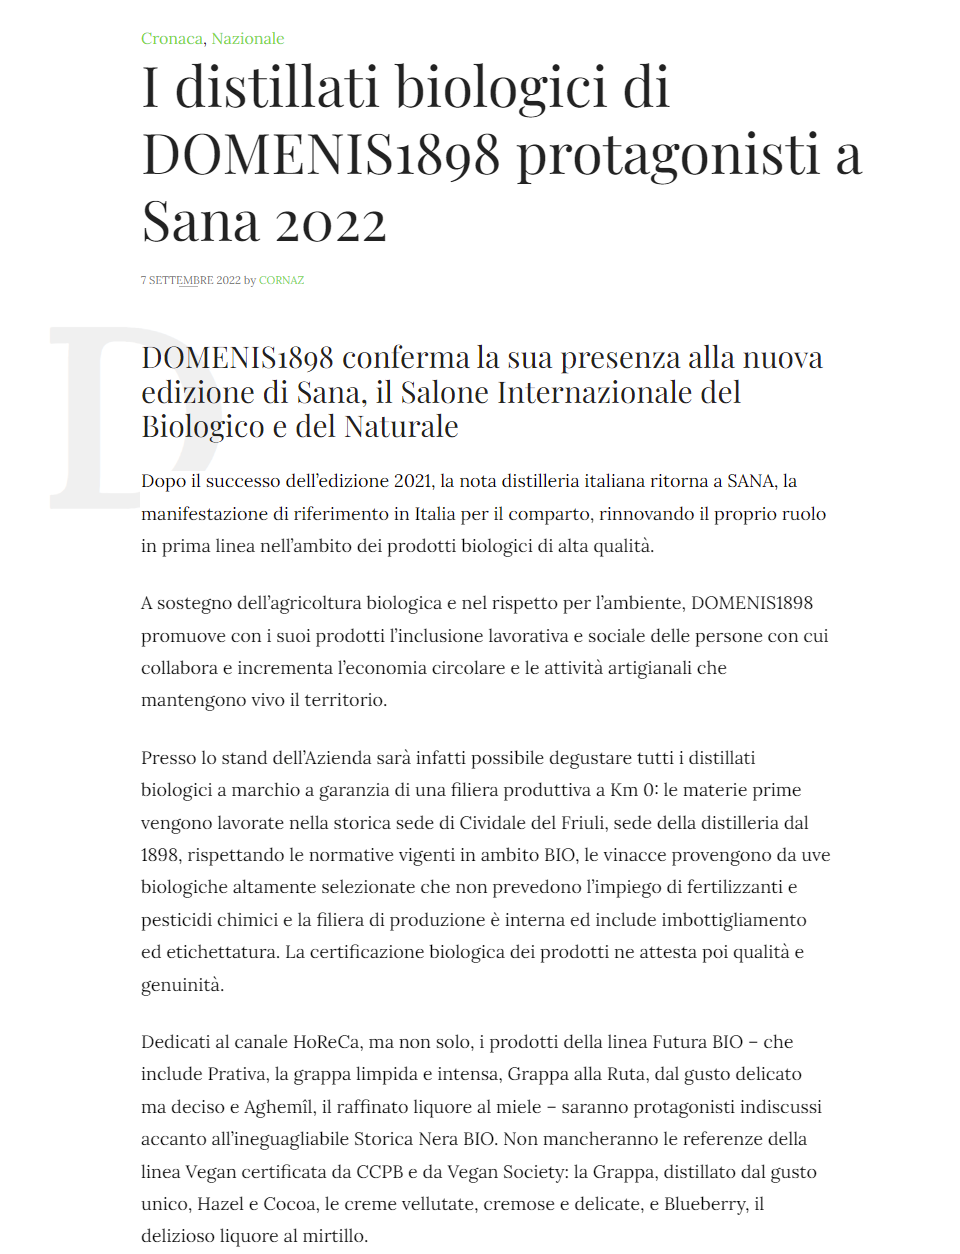 2022 settembre 07: Corrierenazionale.it – I distillati biologici di DOMENIS1898protagonisti a SANA 2022